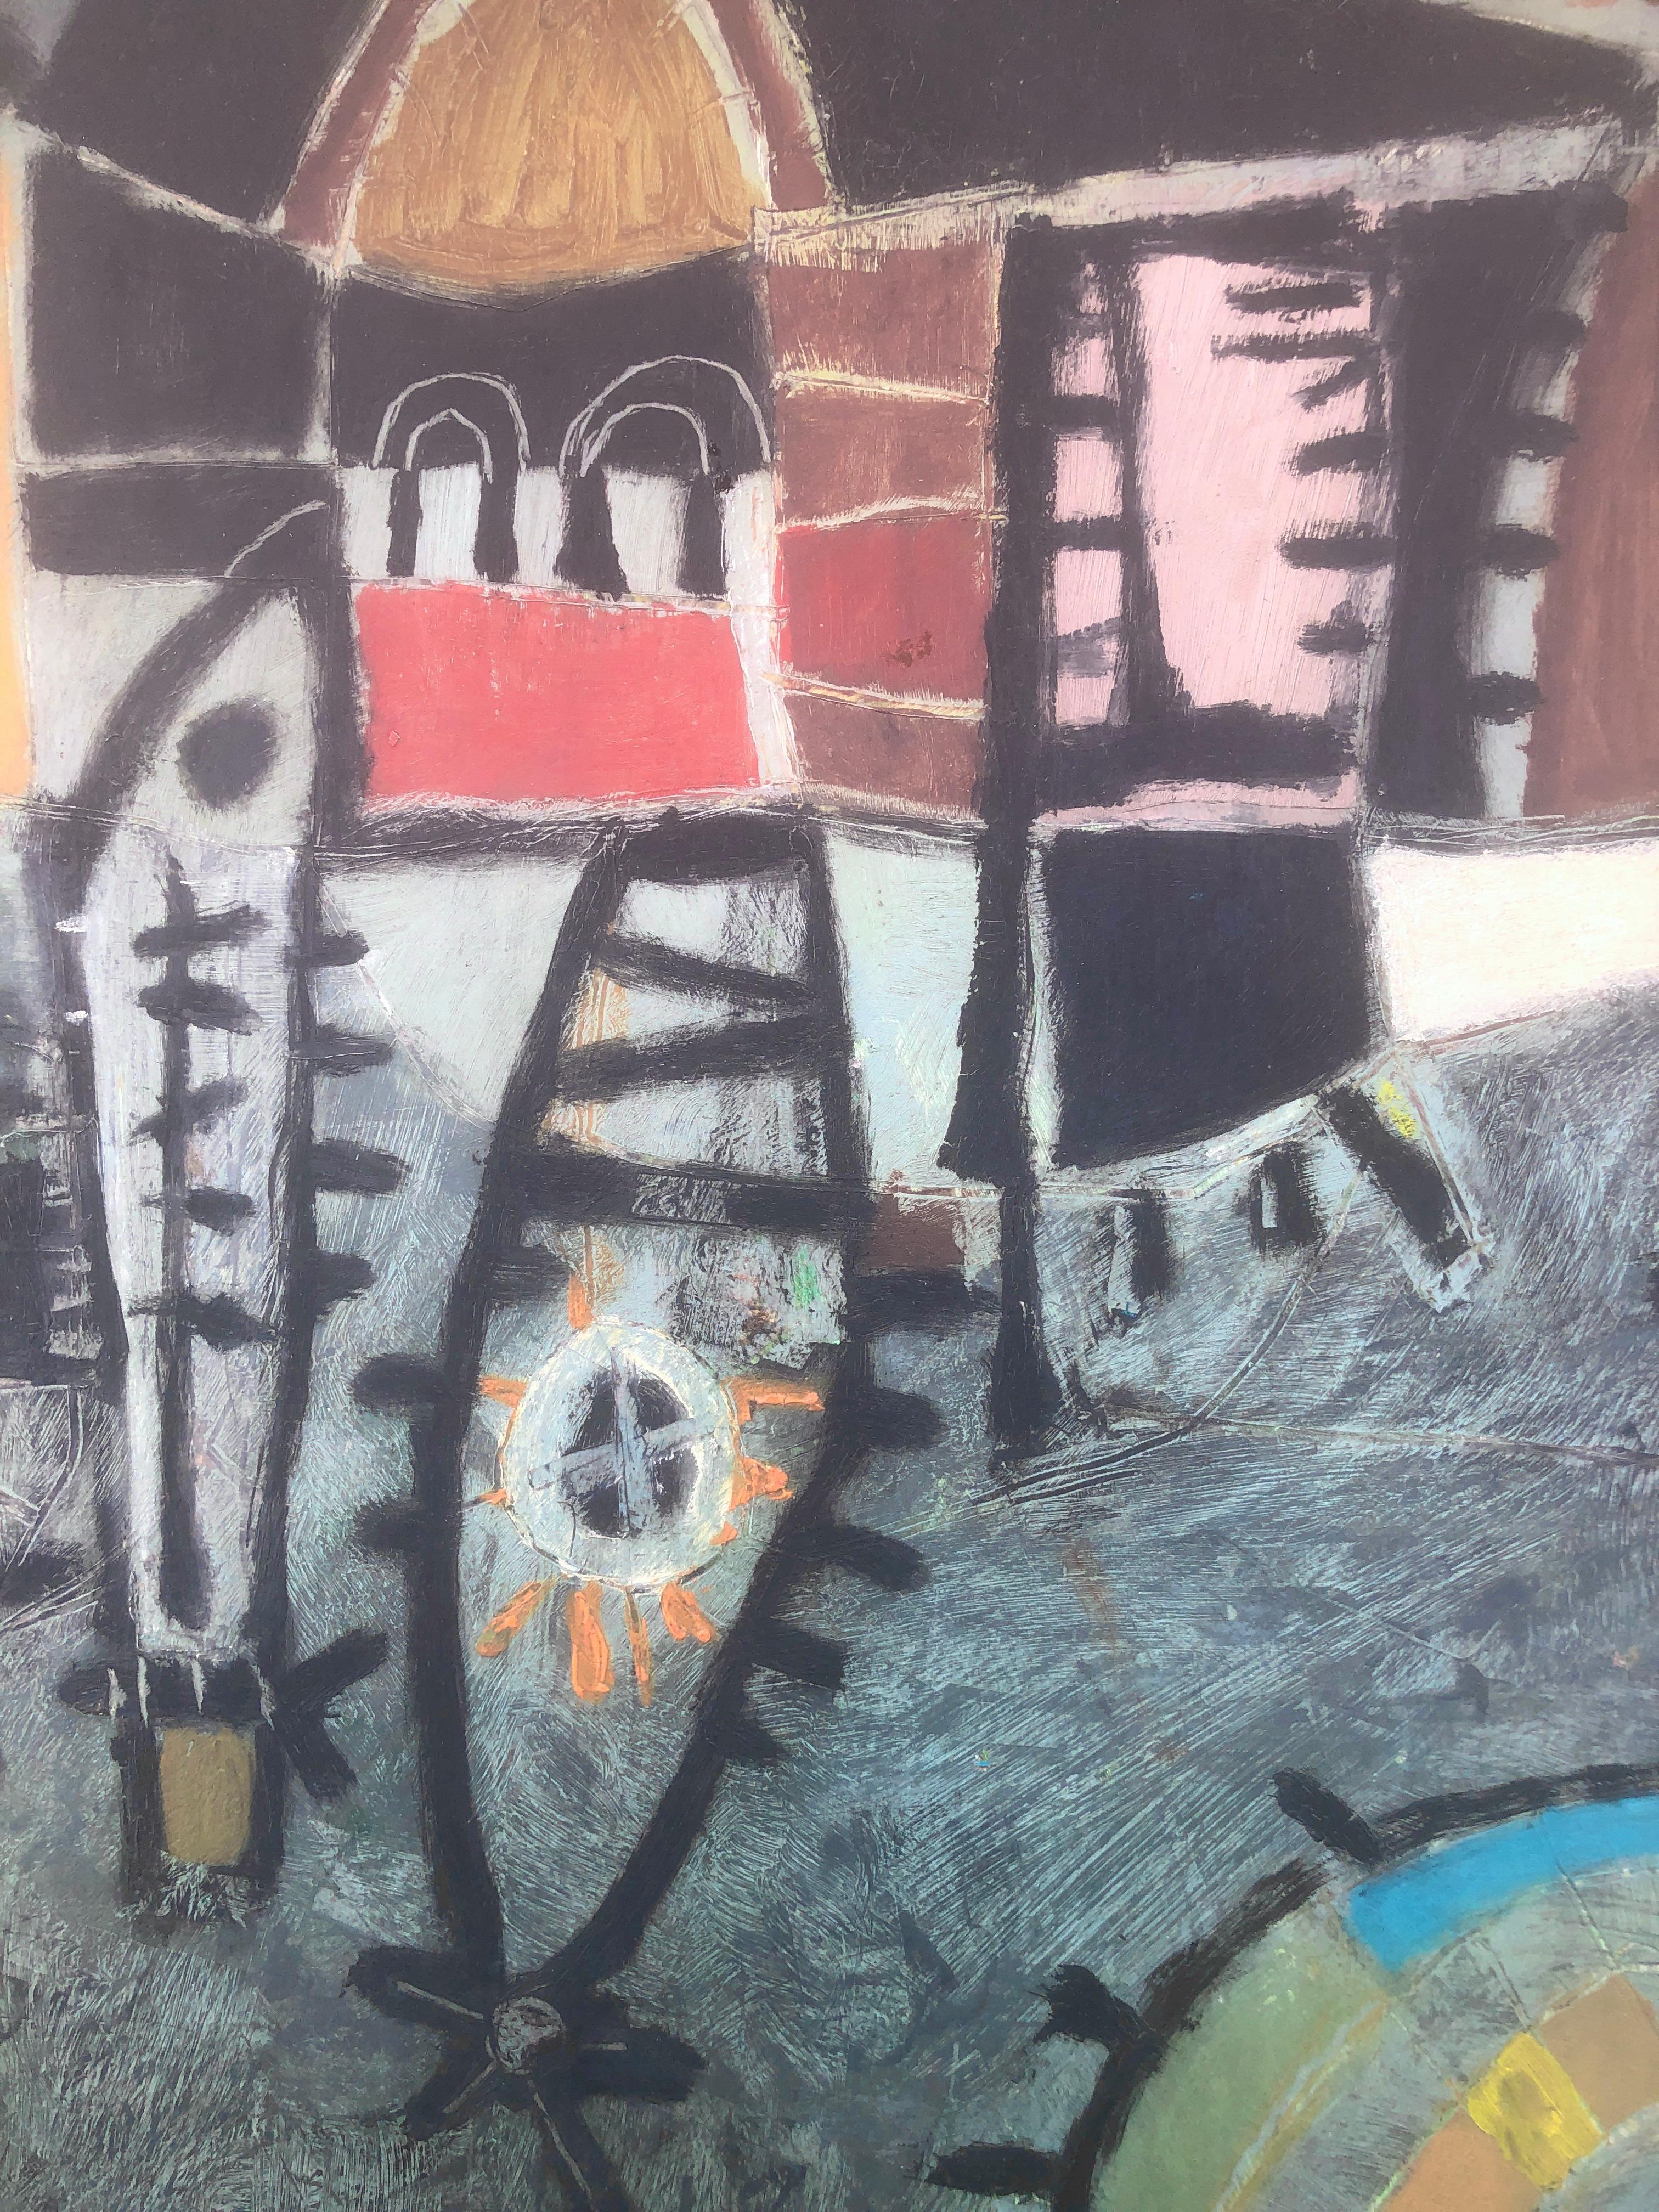 Gustavo Úbeda (1930-1994) - Surrealistische Szene, Brasilien - Acryl auf Platte
Das Öl misst 60x42 cm.
Rahmenlos.

Das Gemälde von Gustavo Úbeda Romero (Herencia, 1930 - Sao Paulo, 1994) stammt aus einer Familie von Malern, die durch Ästhetik und